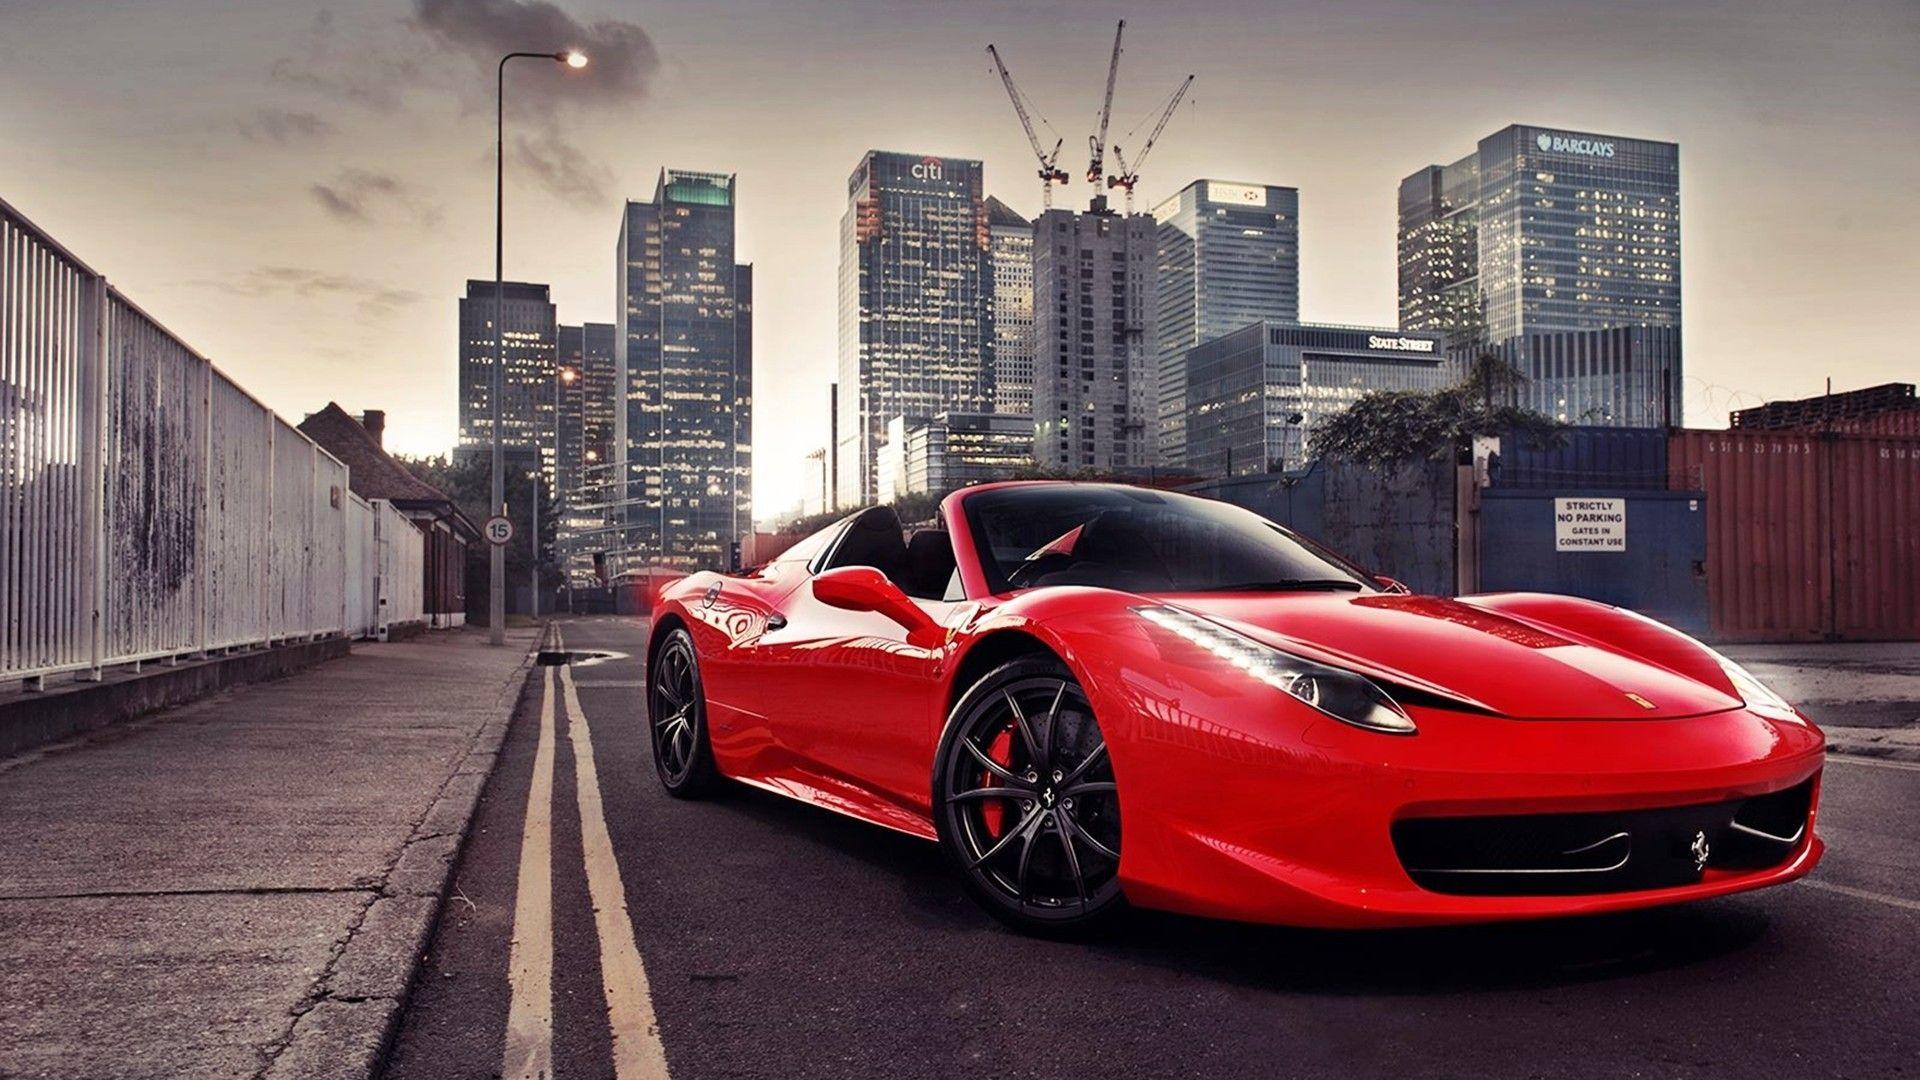 Ferrari Cars. ❌CustoM VehicleS ❌. Ferrari car